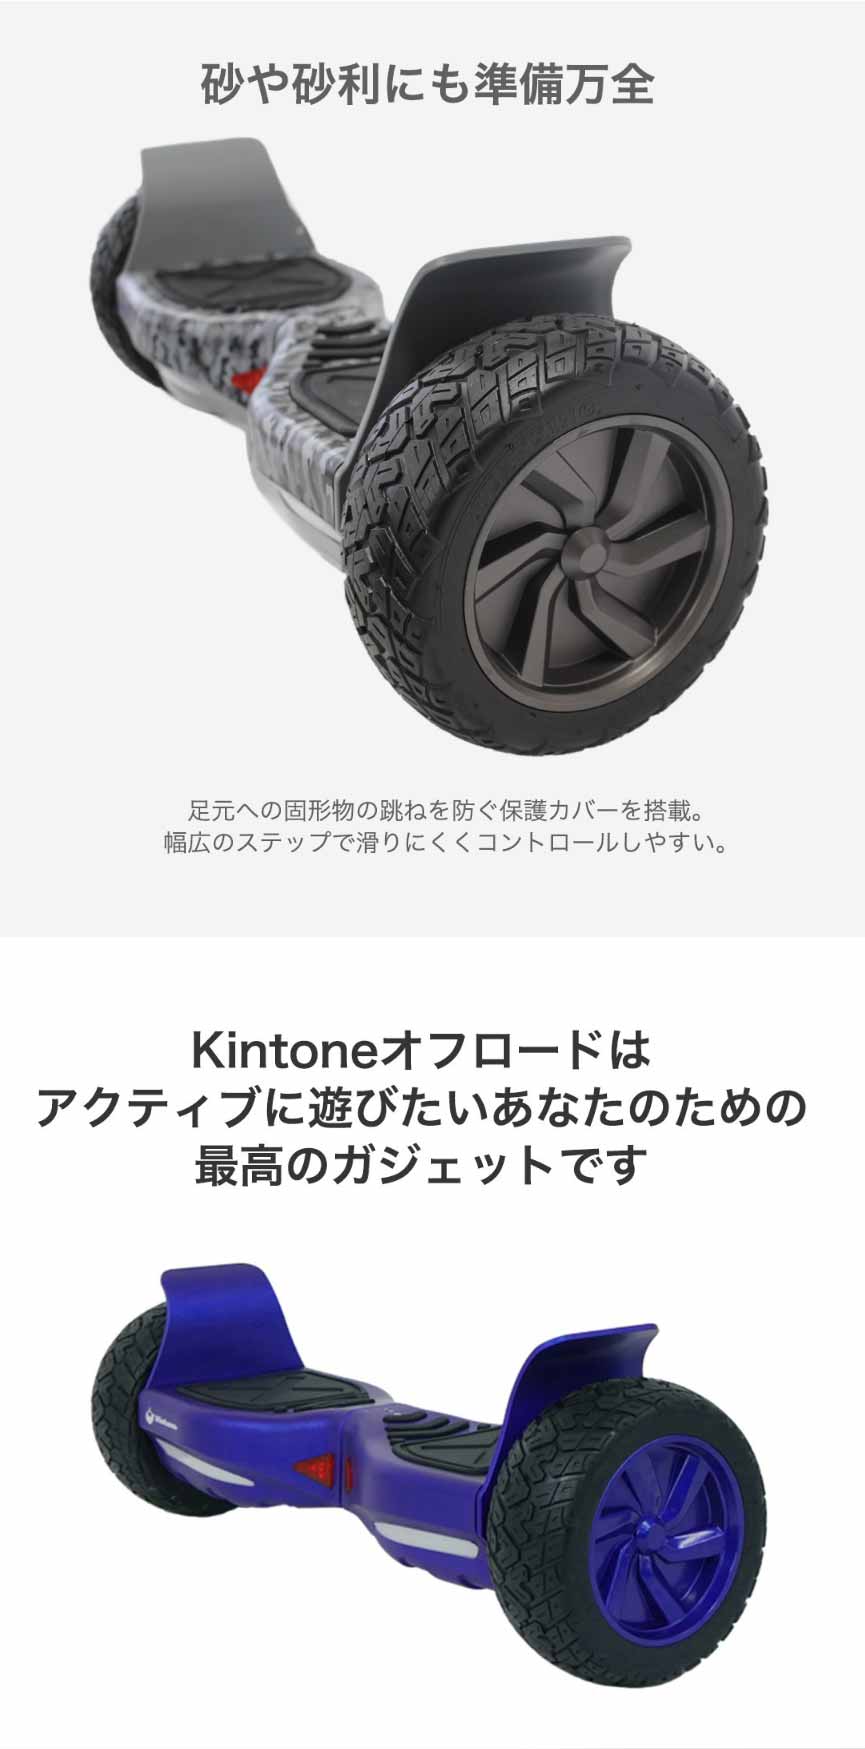 上質で快適 KINTONE キントーン オフロードモデル カモフラージュ(迷彩